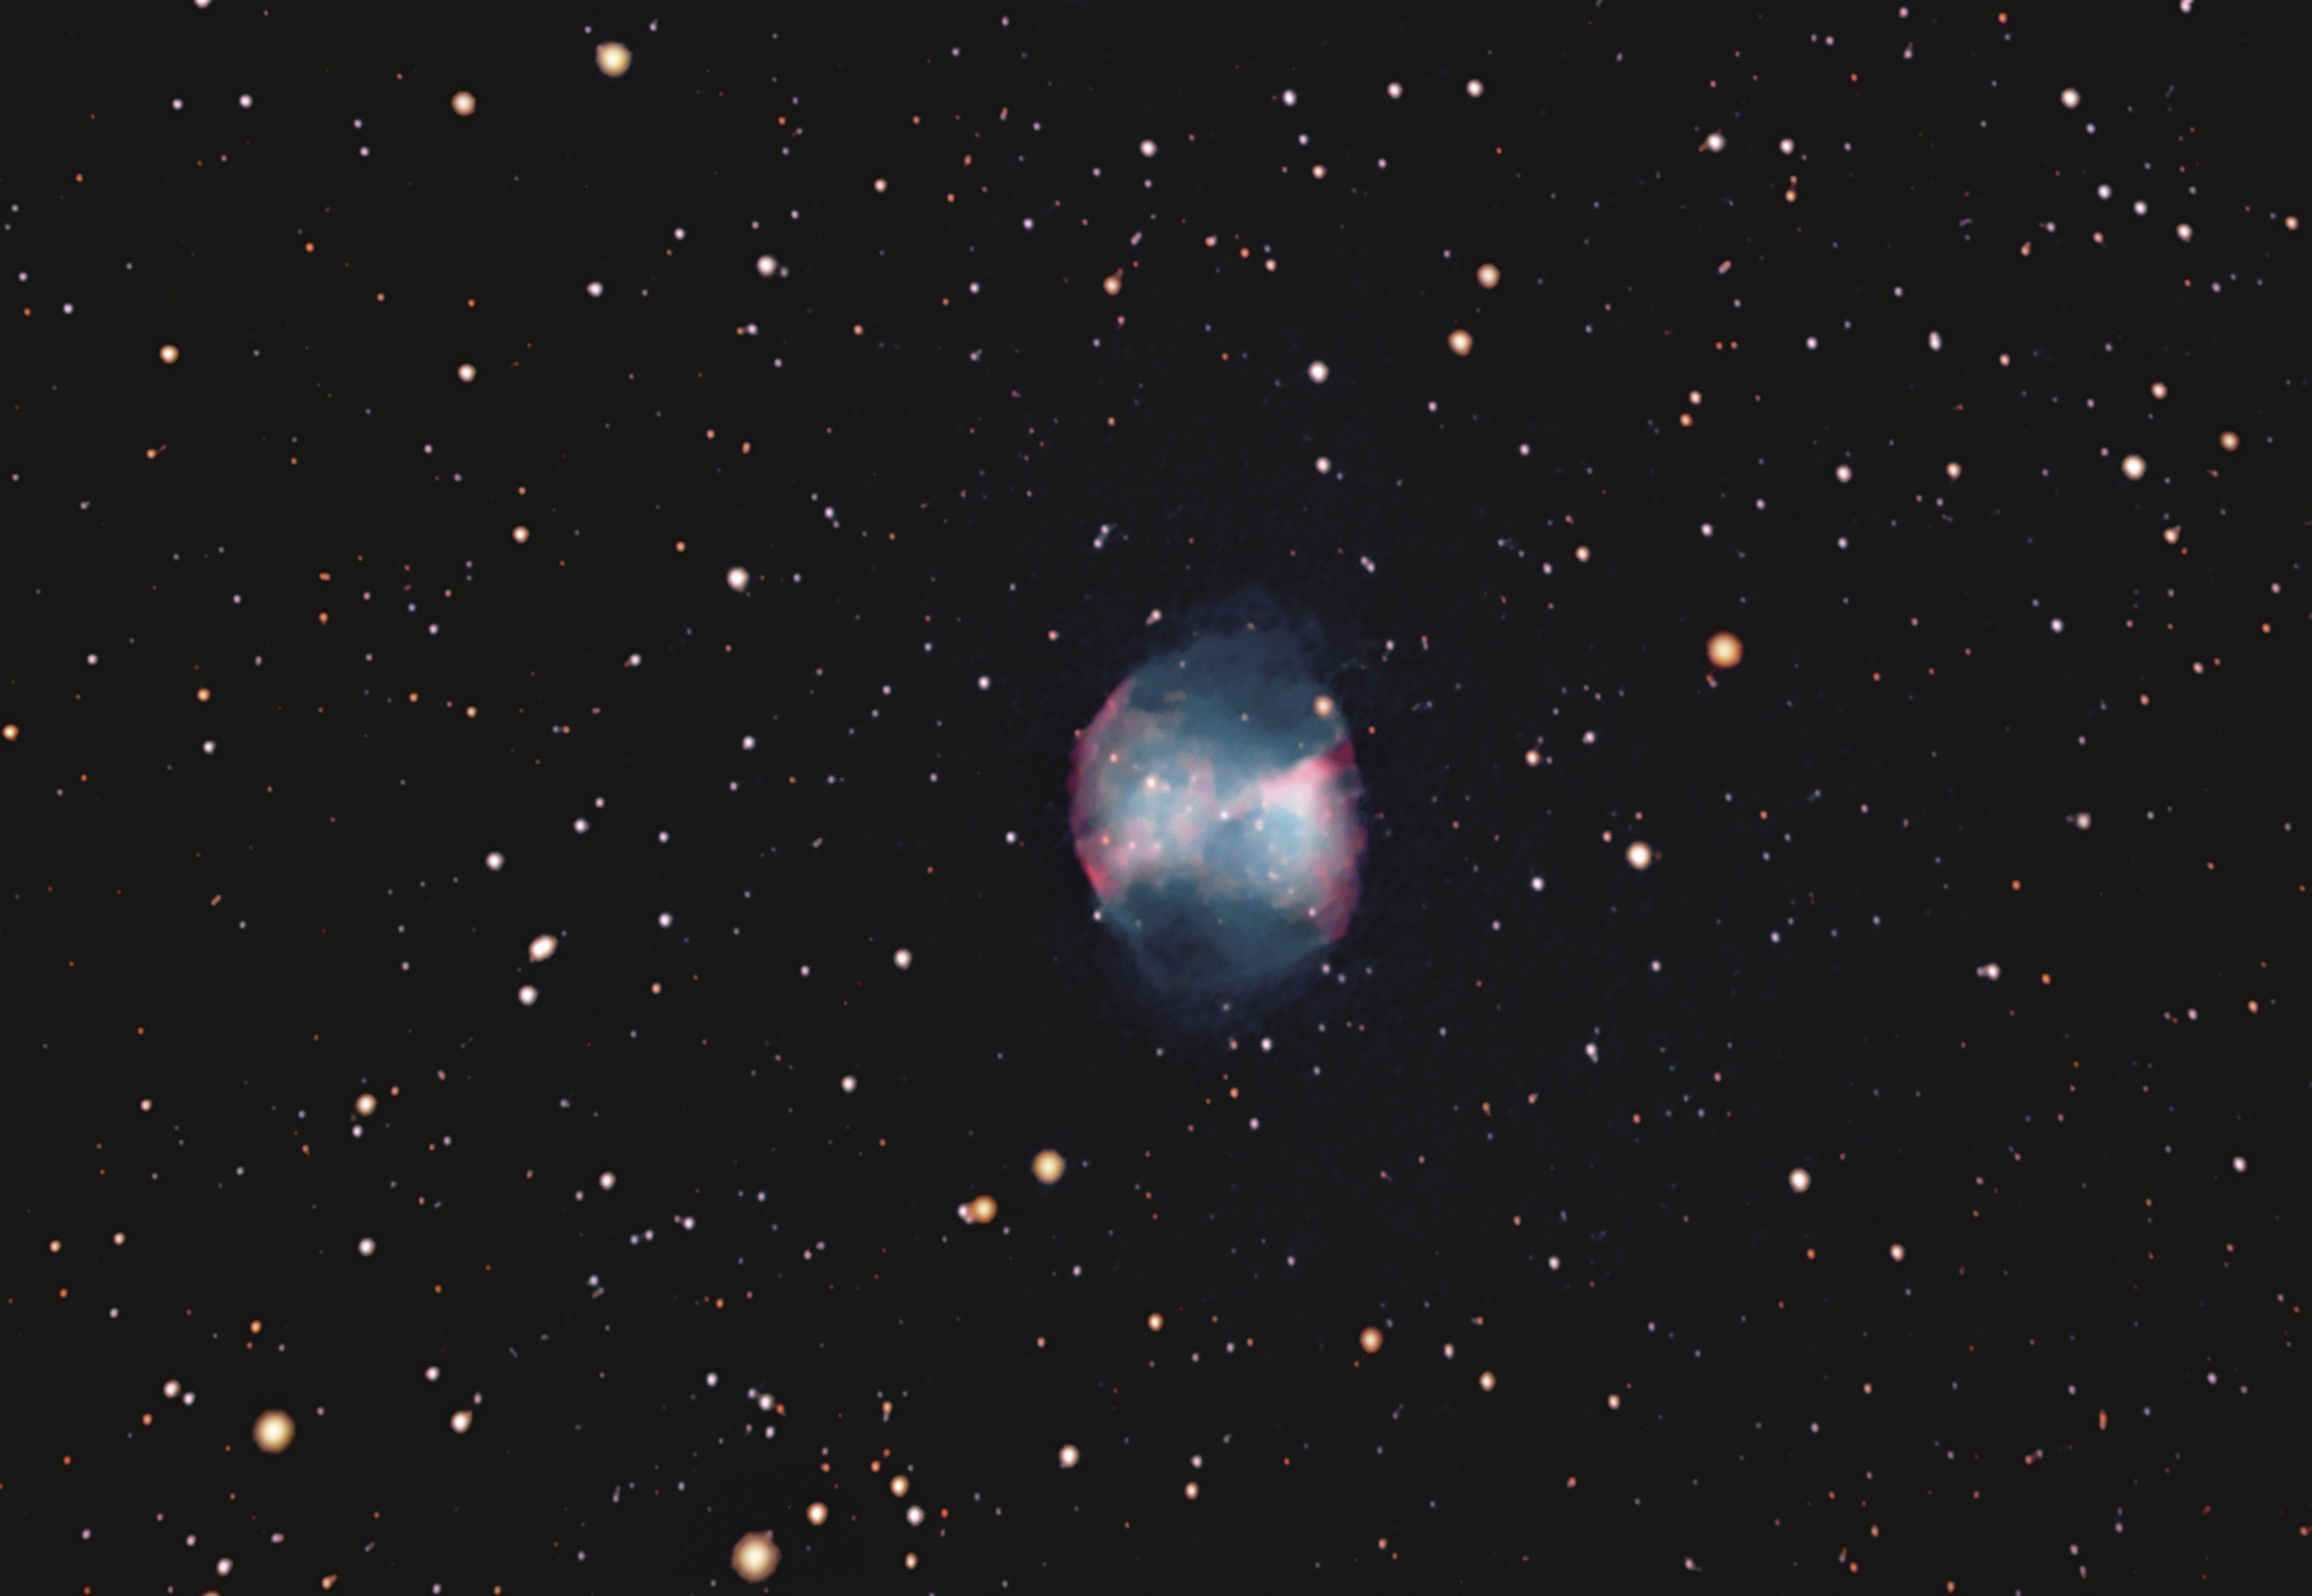 24 The Dumbbell Nebula (Messier 27)